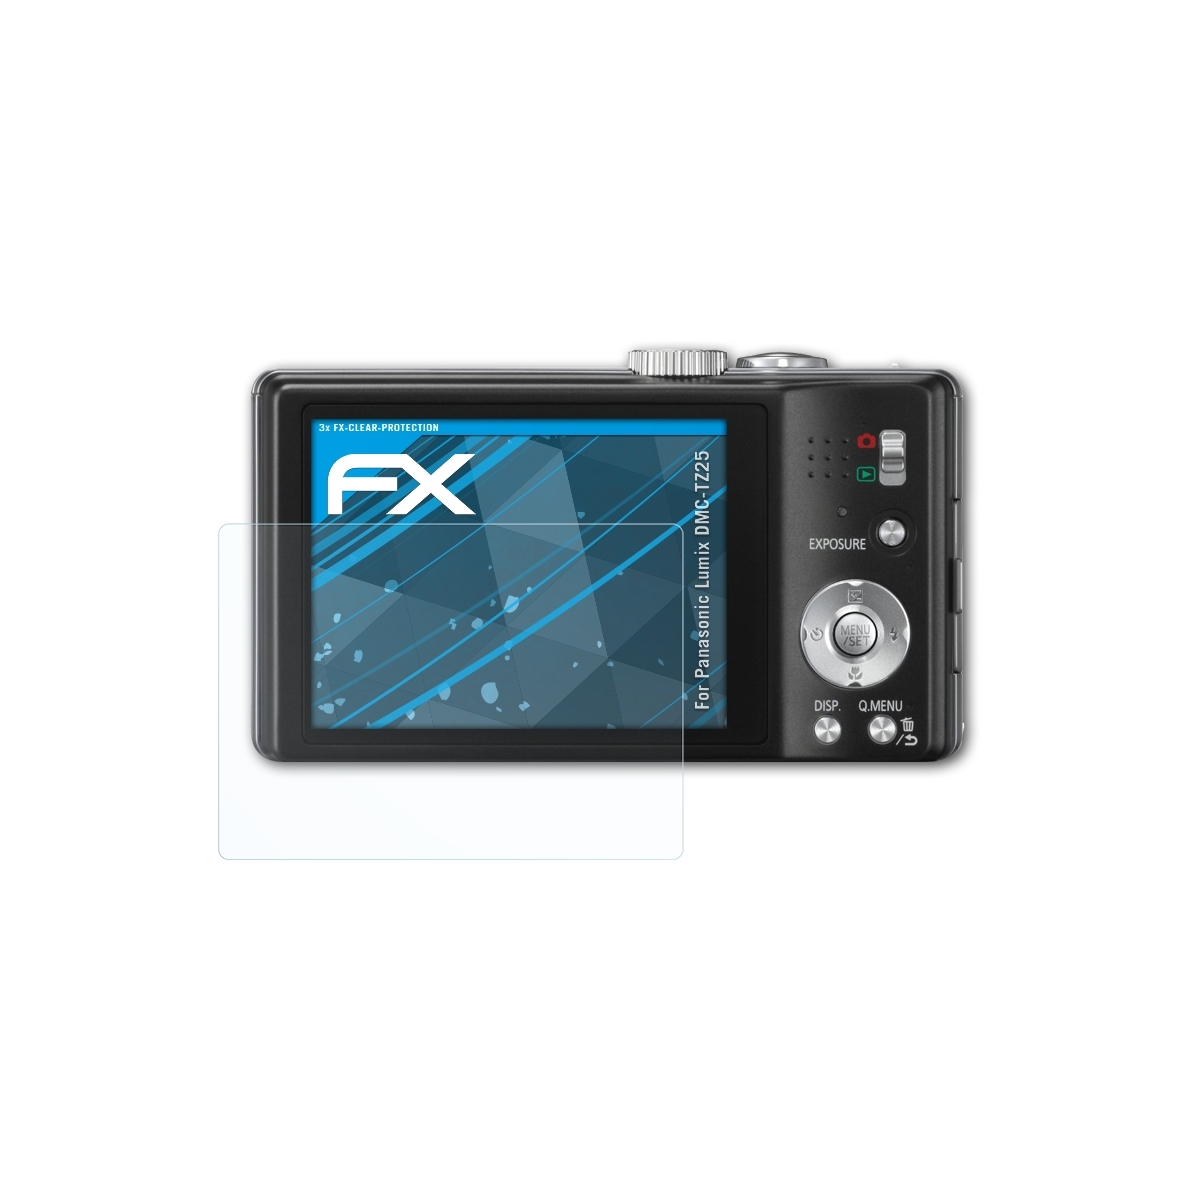 Displayschutz(für 3x Lumix FX-Clear ATFOLIX DMC-TZ25) Panasonic